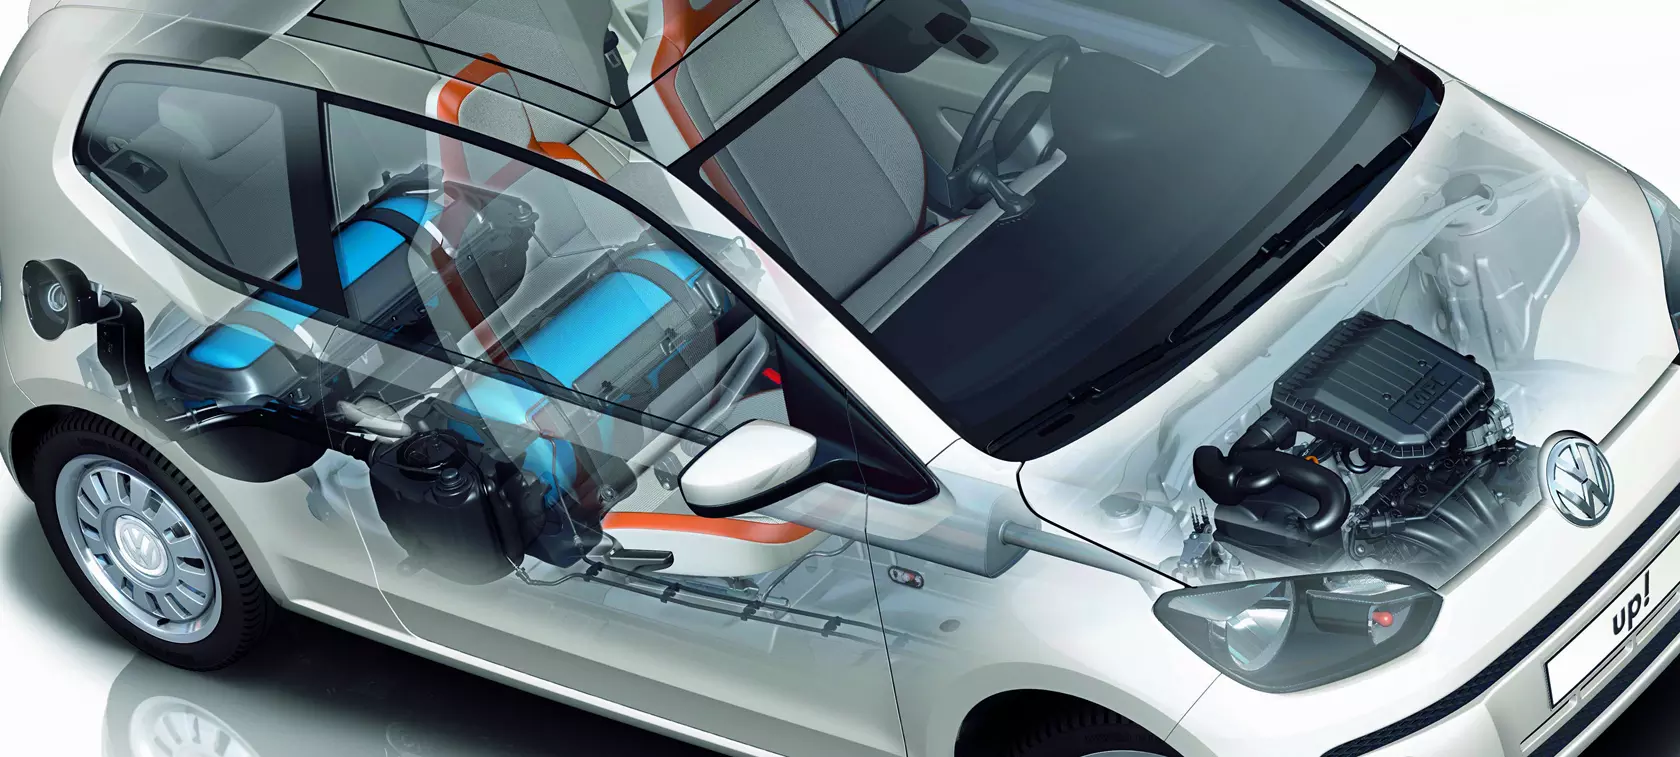 Najbardziej ekologiczny samochód z układem zasilania Bosch